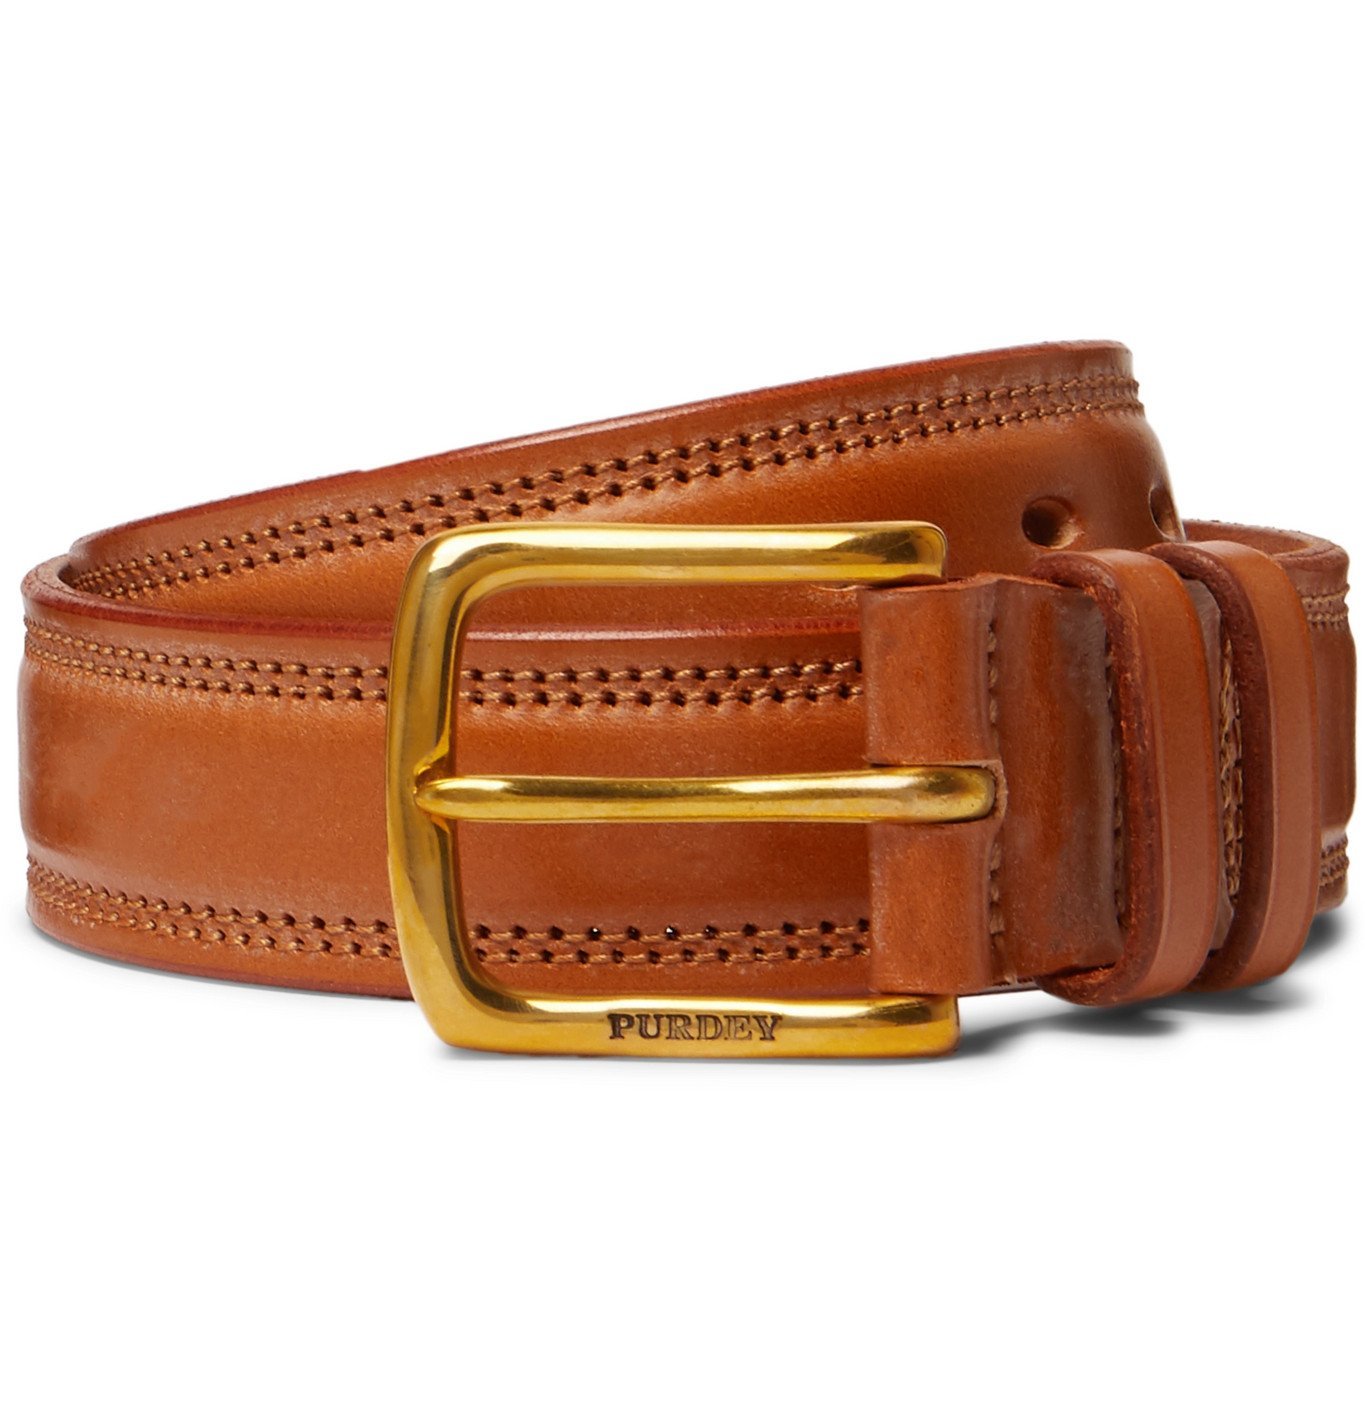 Purdey - 4cm Leather Belt - Brown Purdey